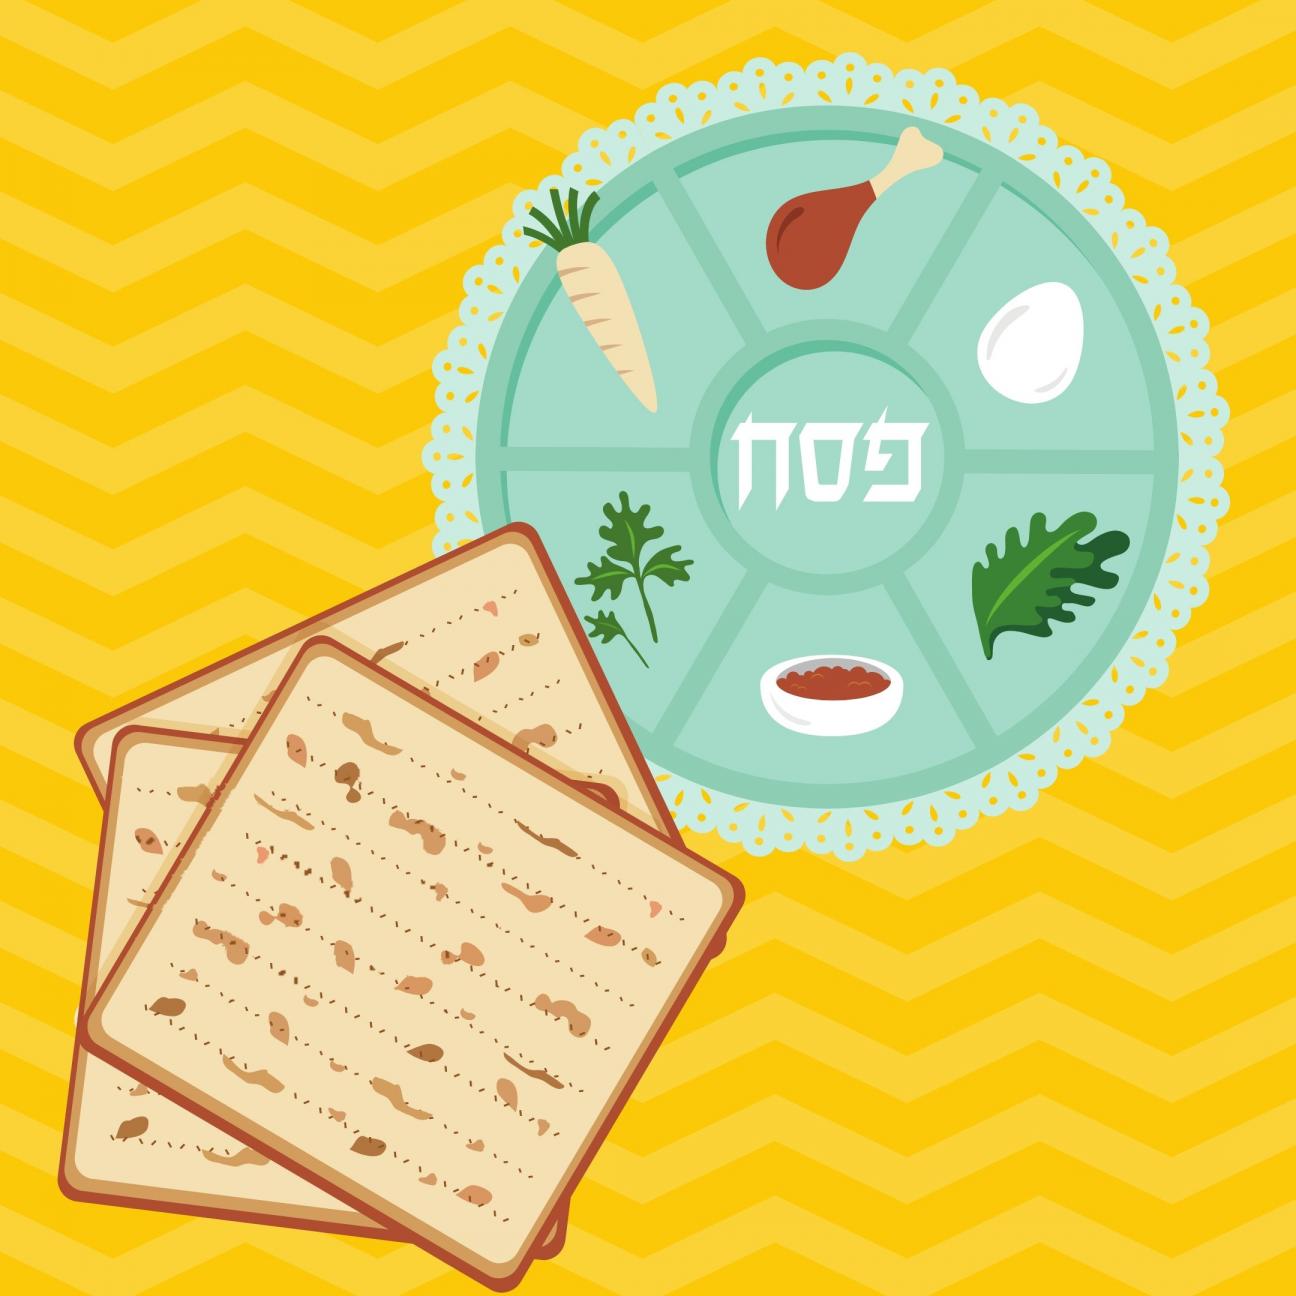 Passover seder plate, matzoh